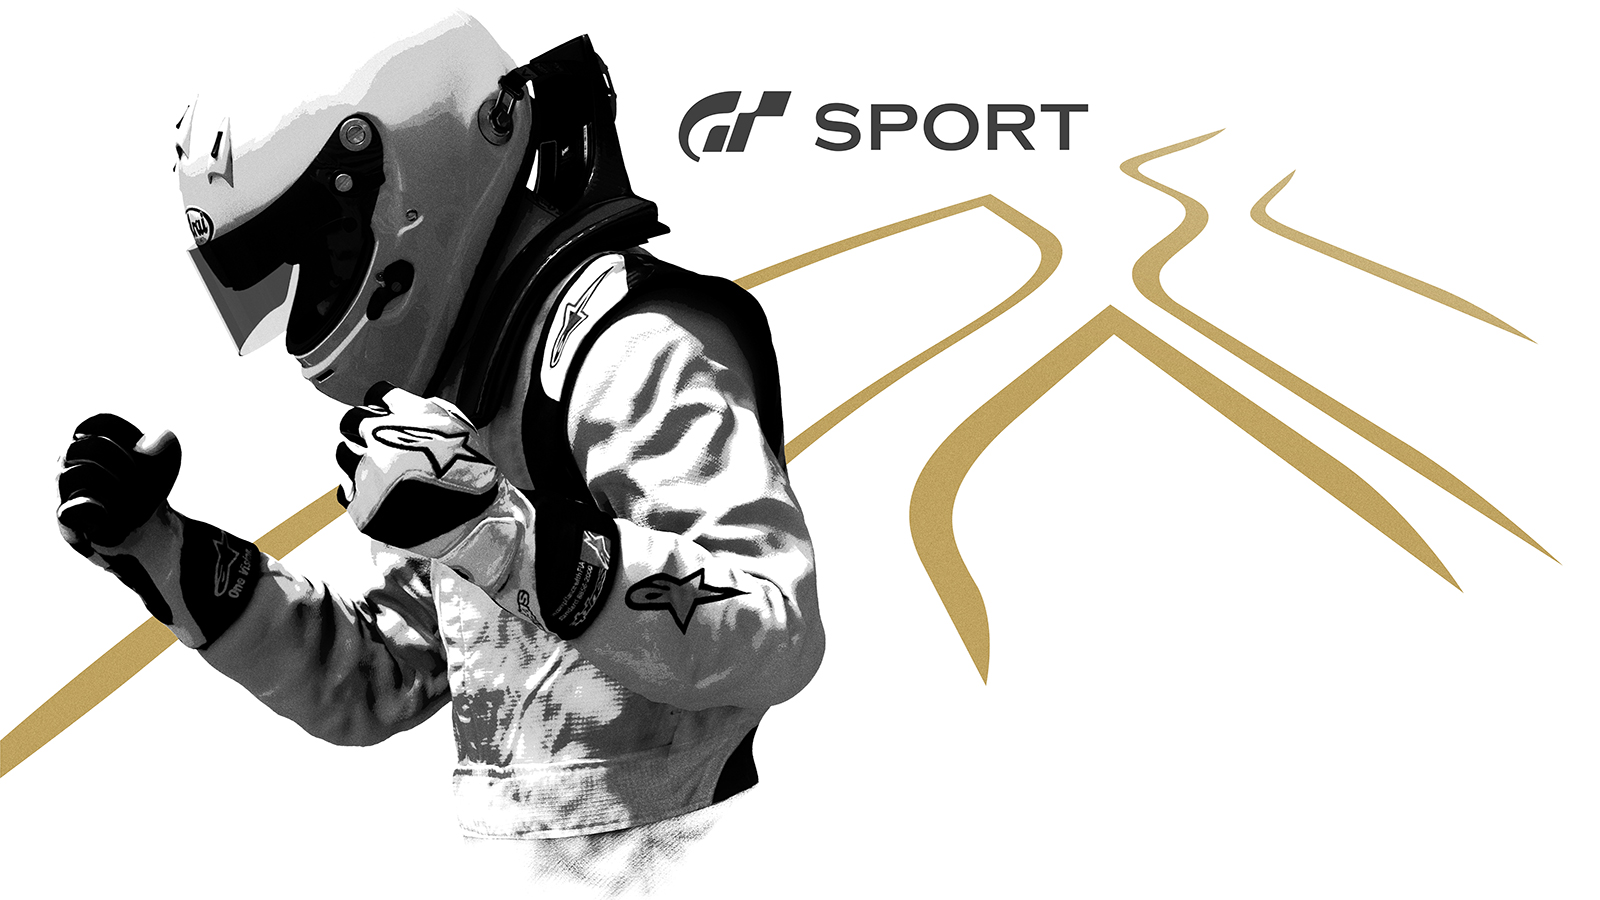 Atualização 1.11 do jogo “Gran Turismo Sport” traz 10 novos carros e novo circuito